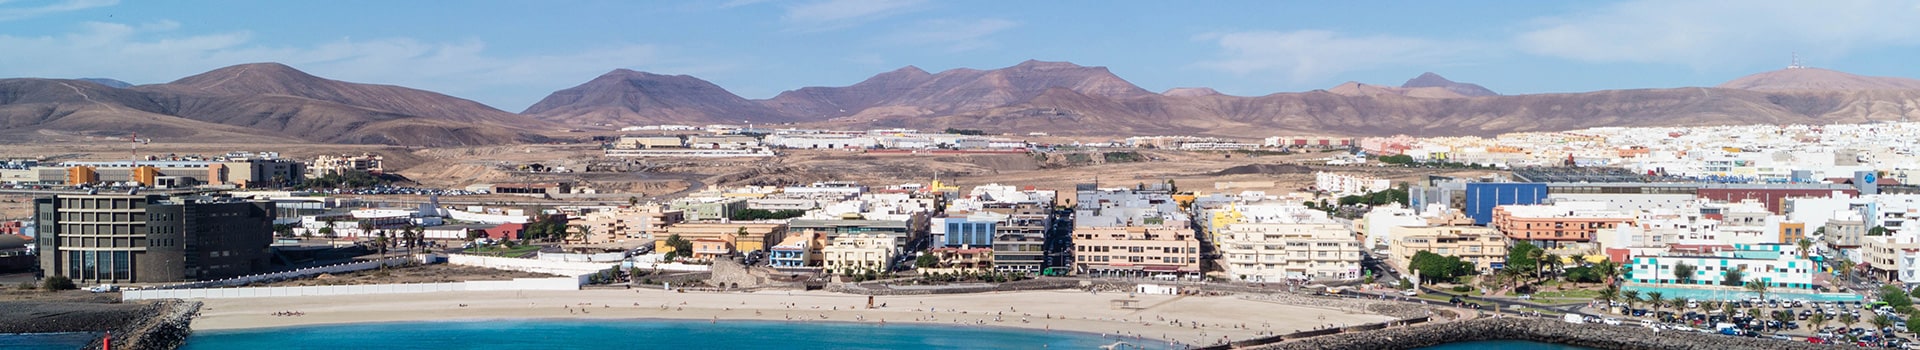 Horta - Fuerteventura